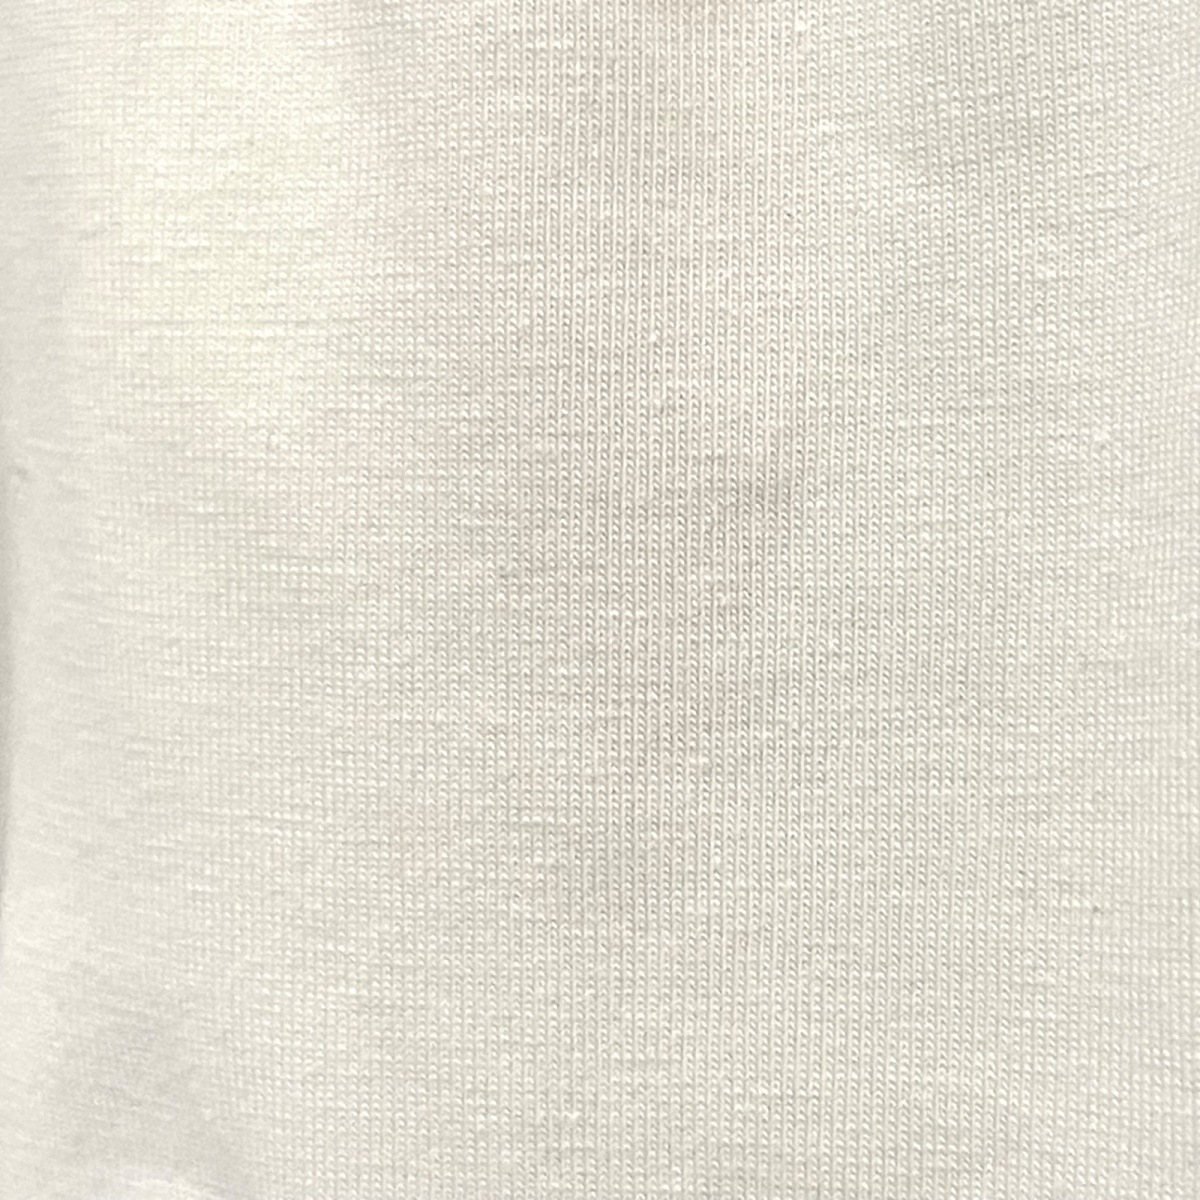 大人気BLUGiRL BLUMARINE(ブルーガールブルマリン) 半袖カットソー クルーネック 花柄 刺繍 ラインストーン 白×ライトブルー×マルチ